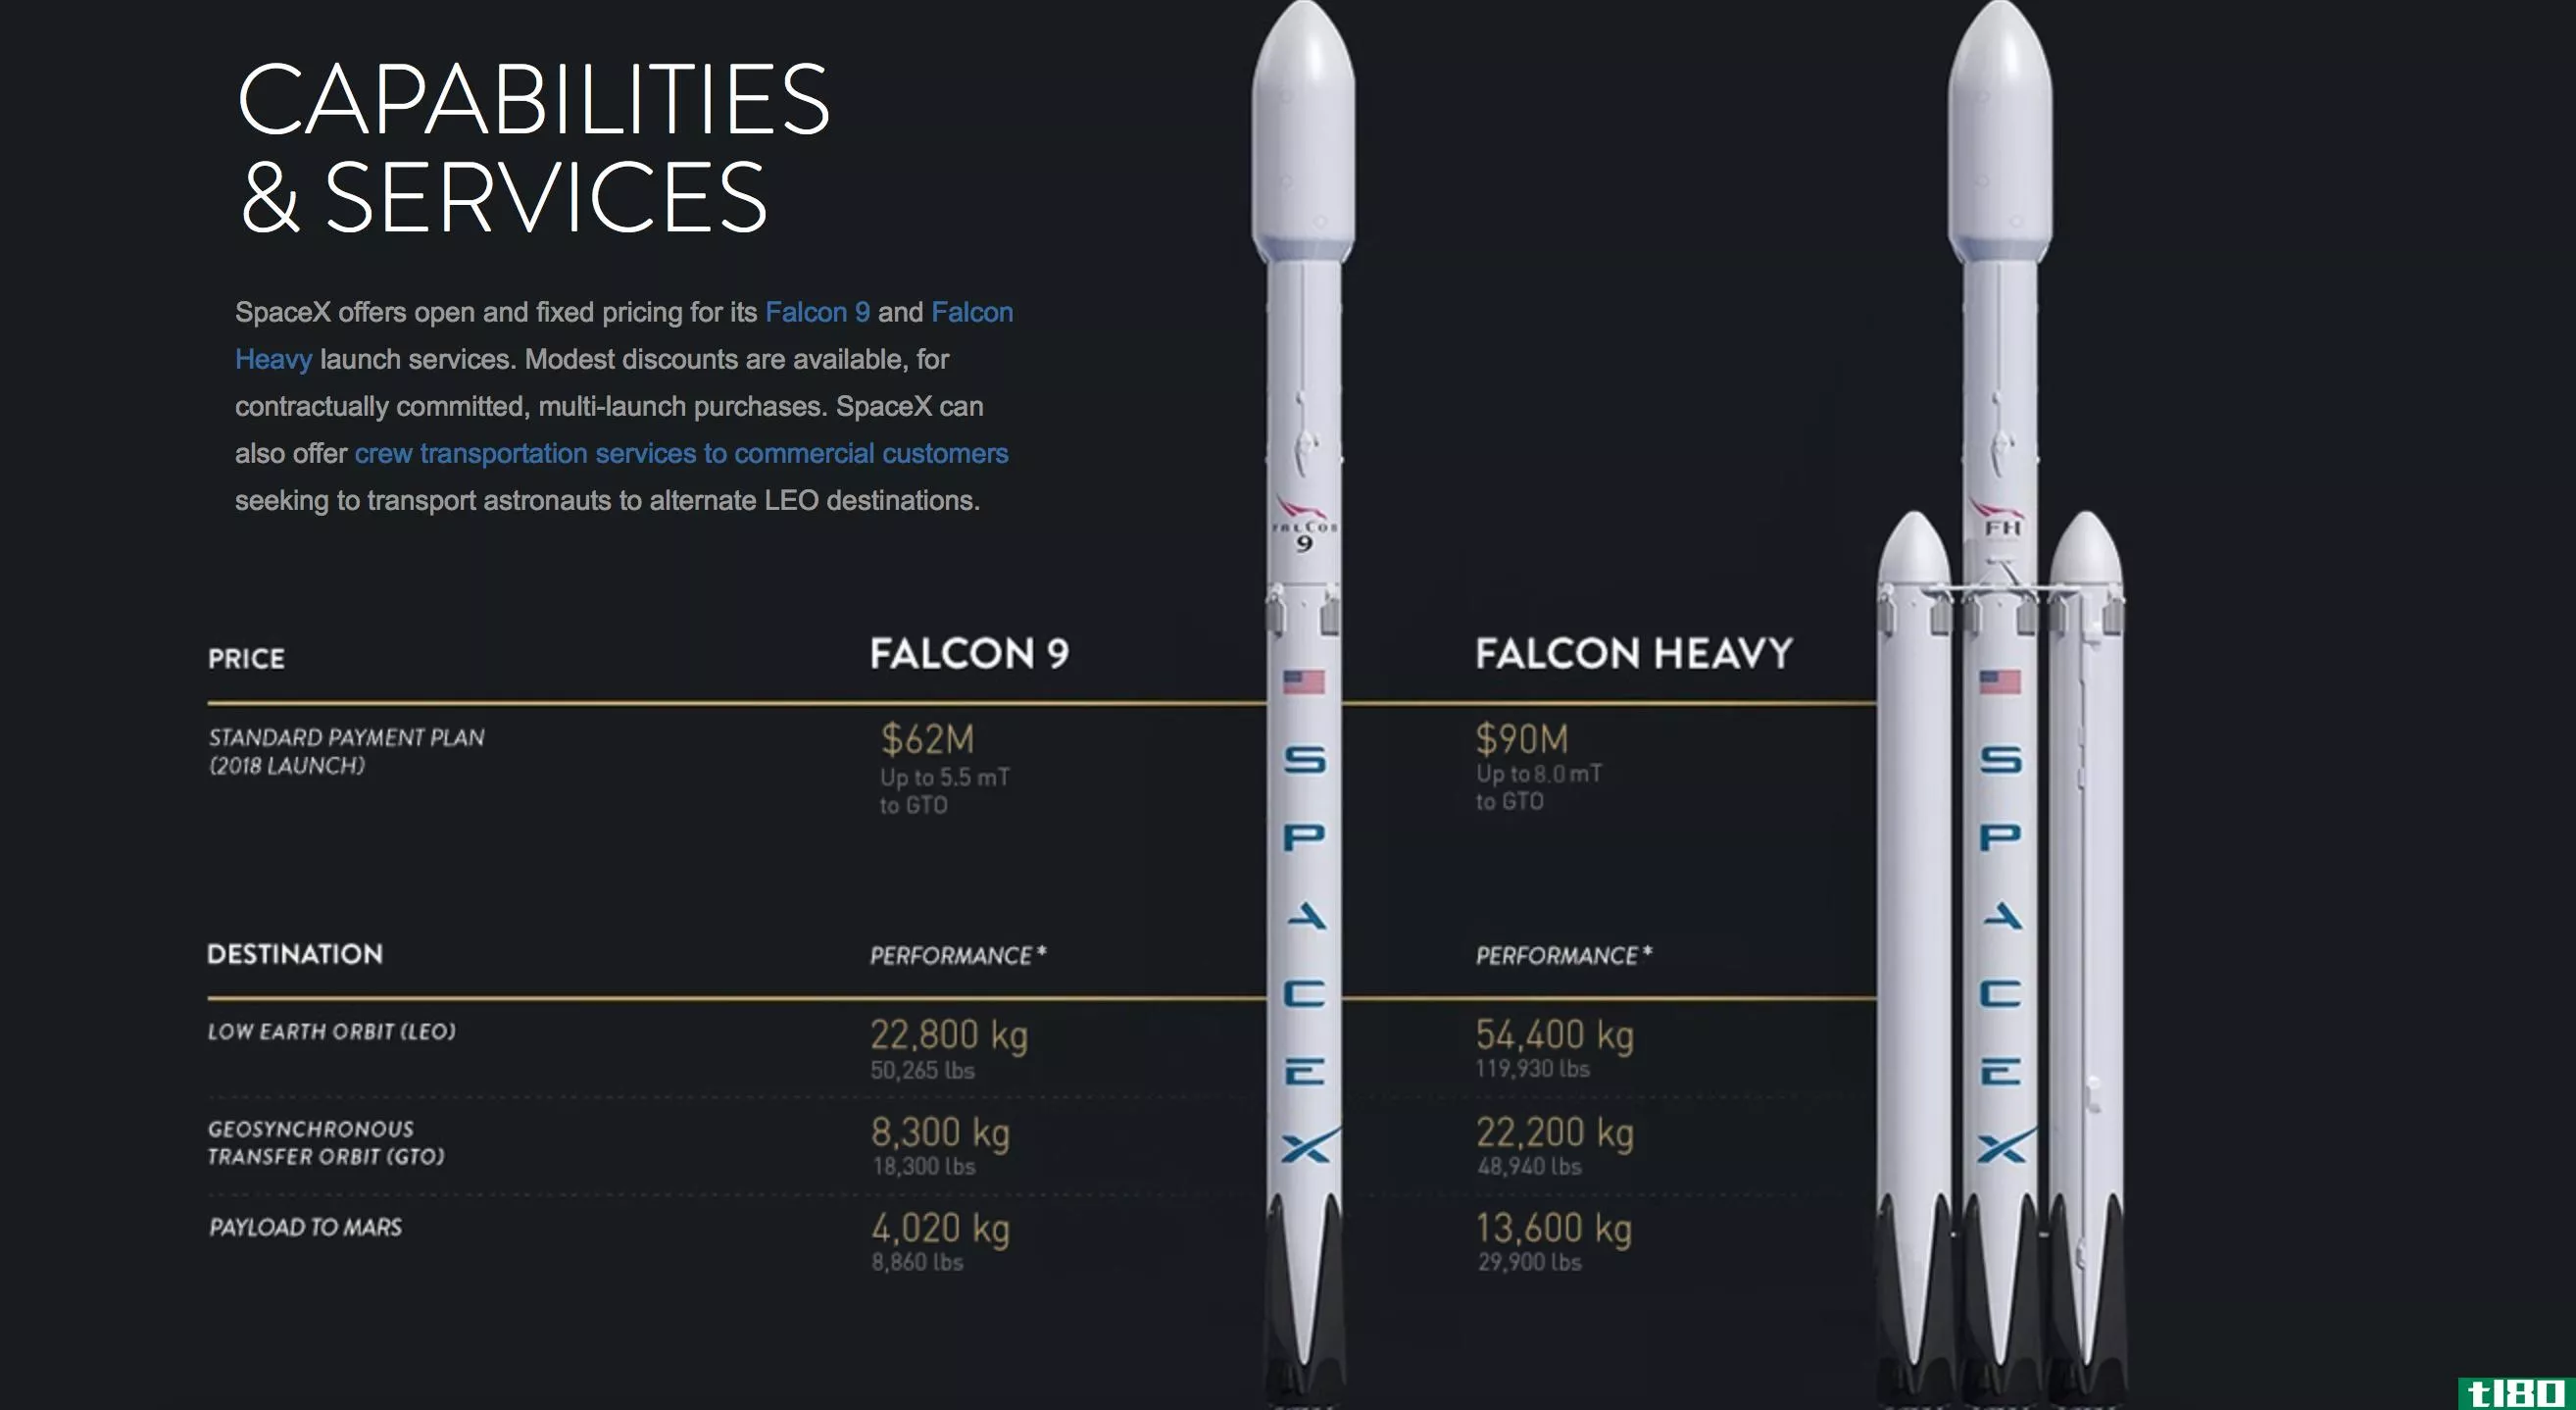 spacex在其网站上更新了其猎鹰火箭的性能